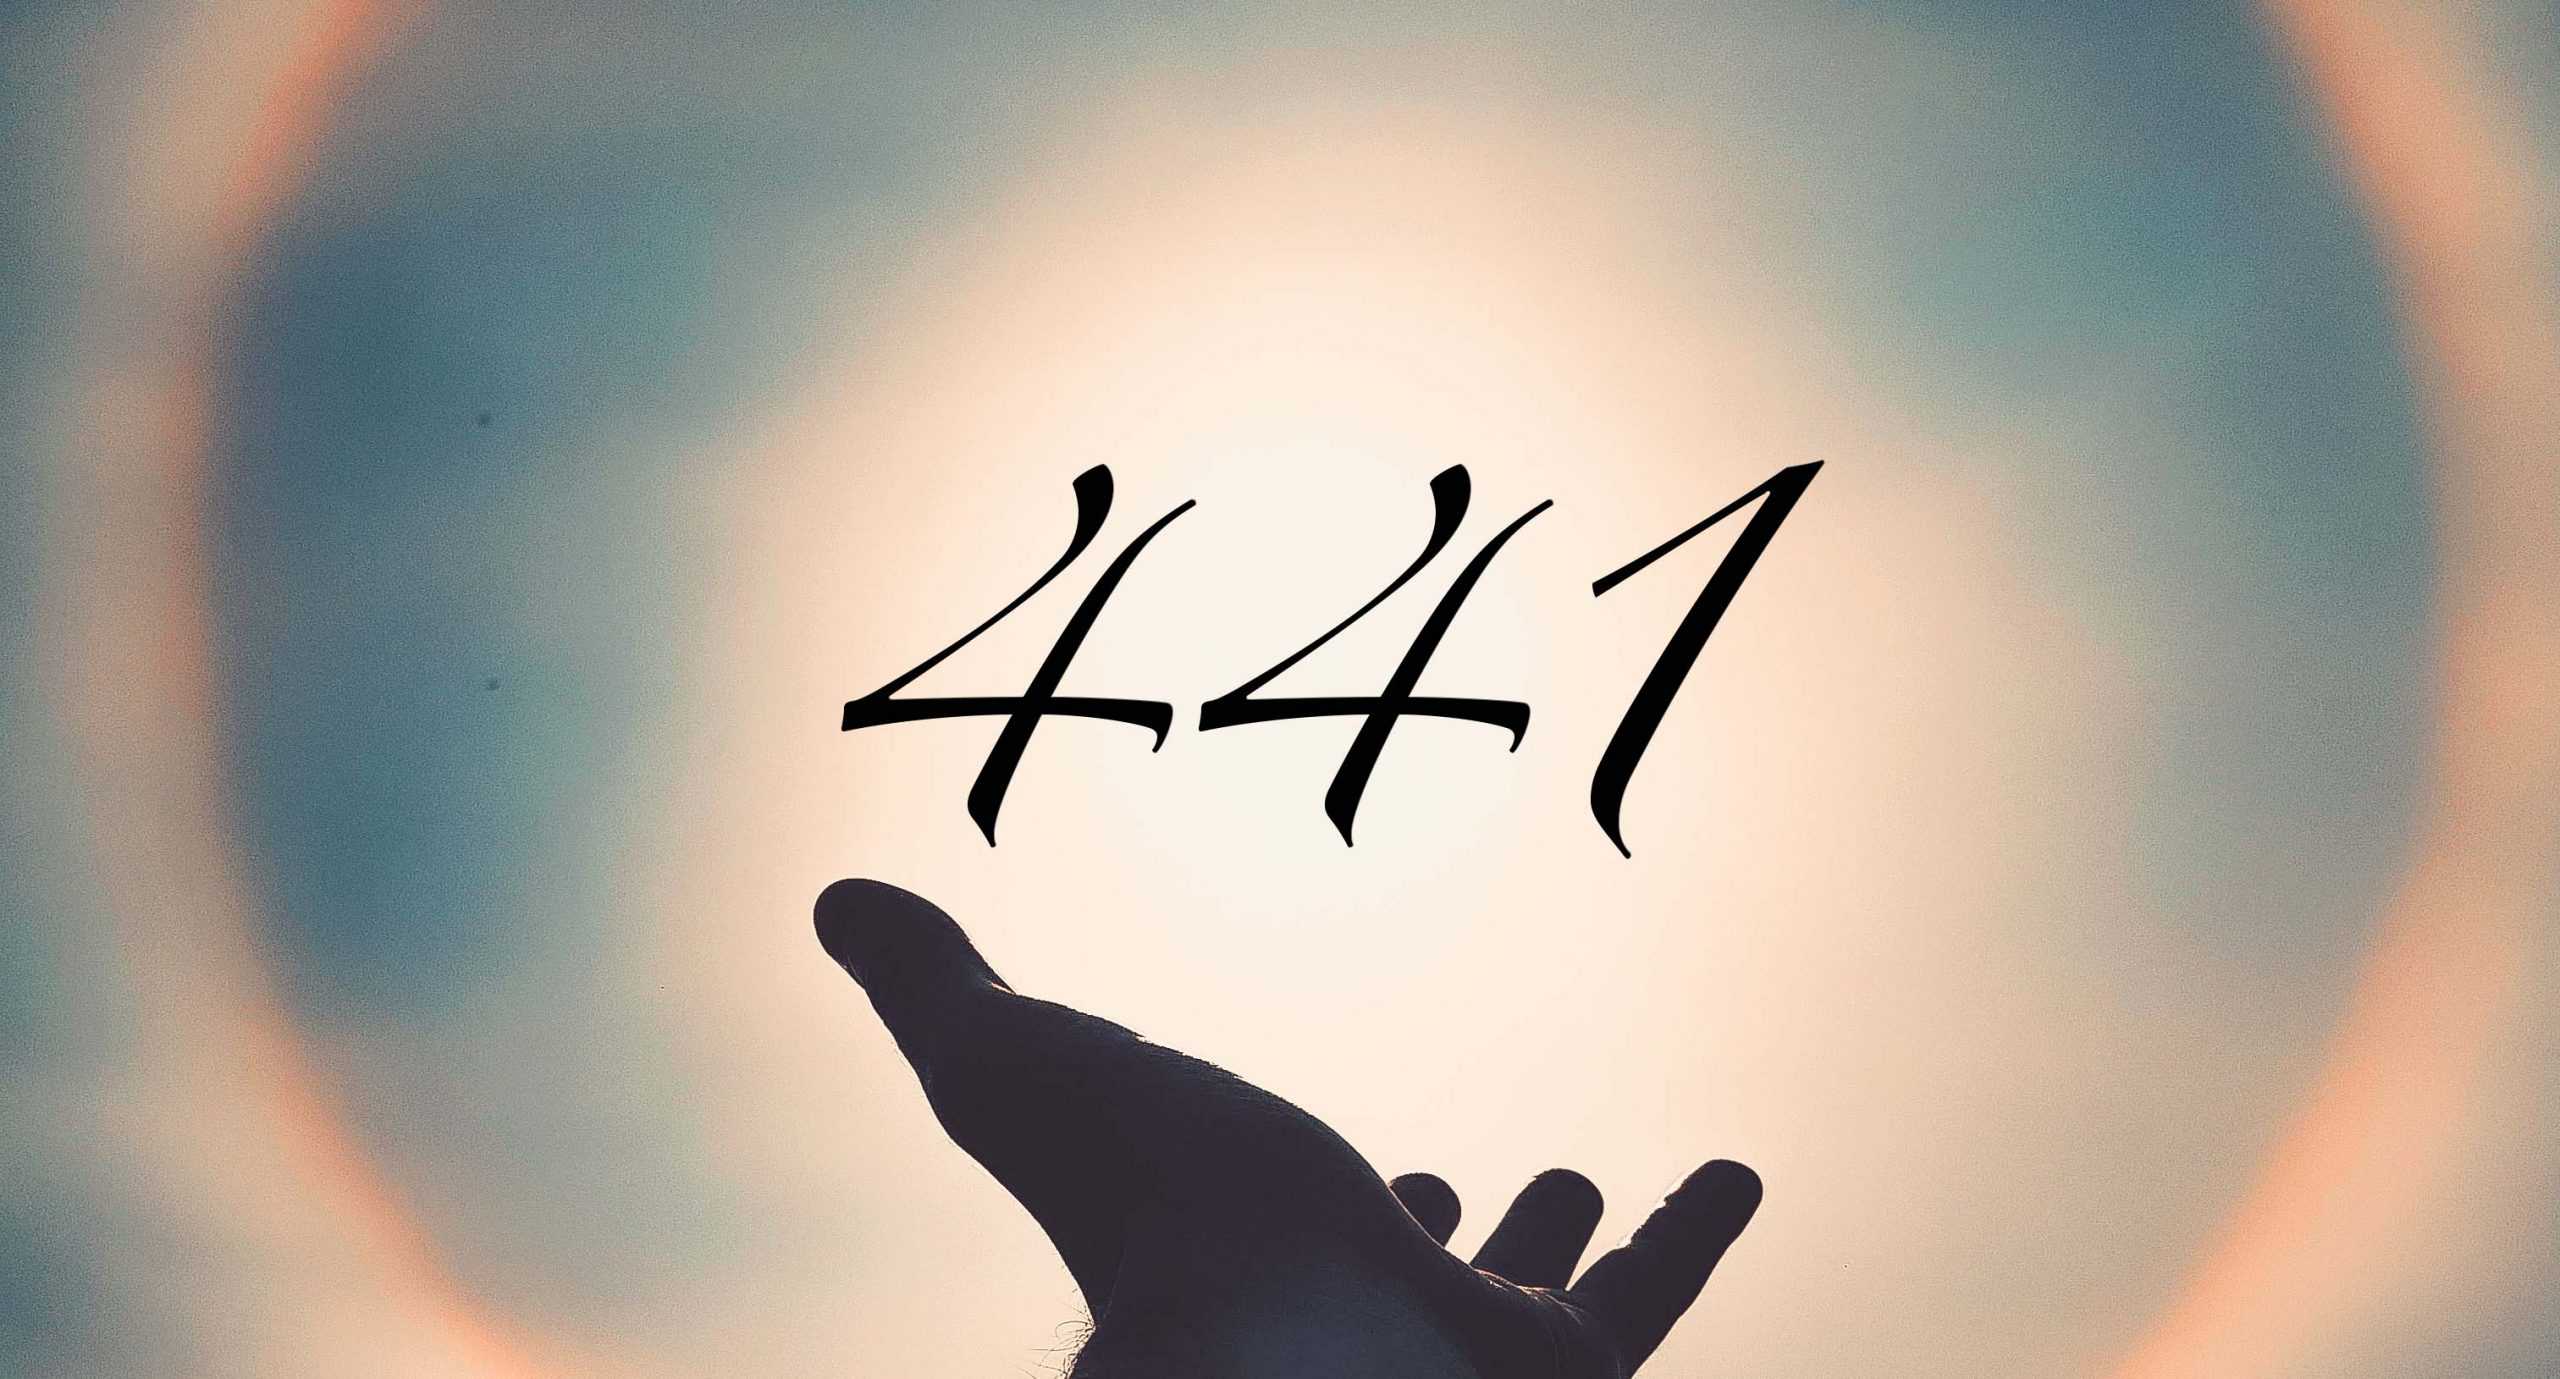 Signification du nombre 441